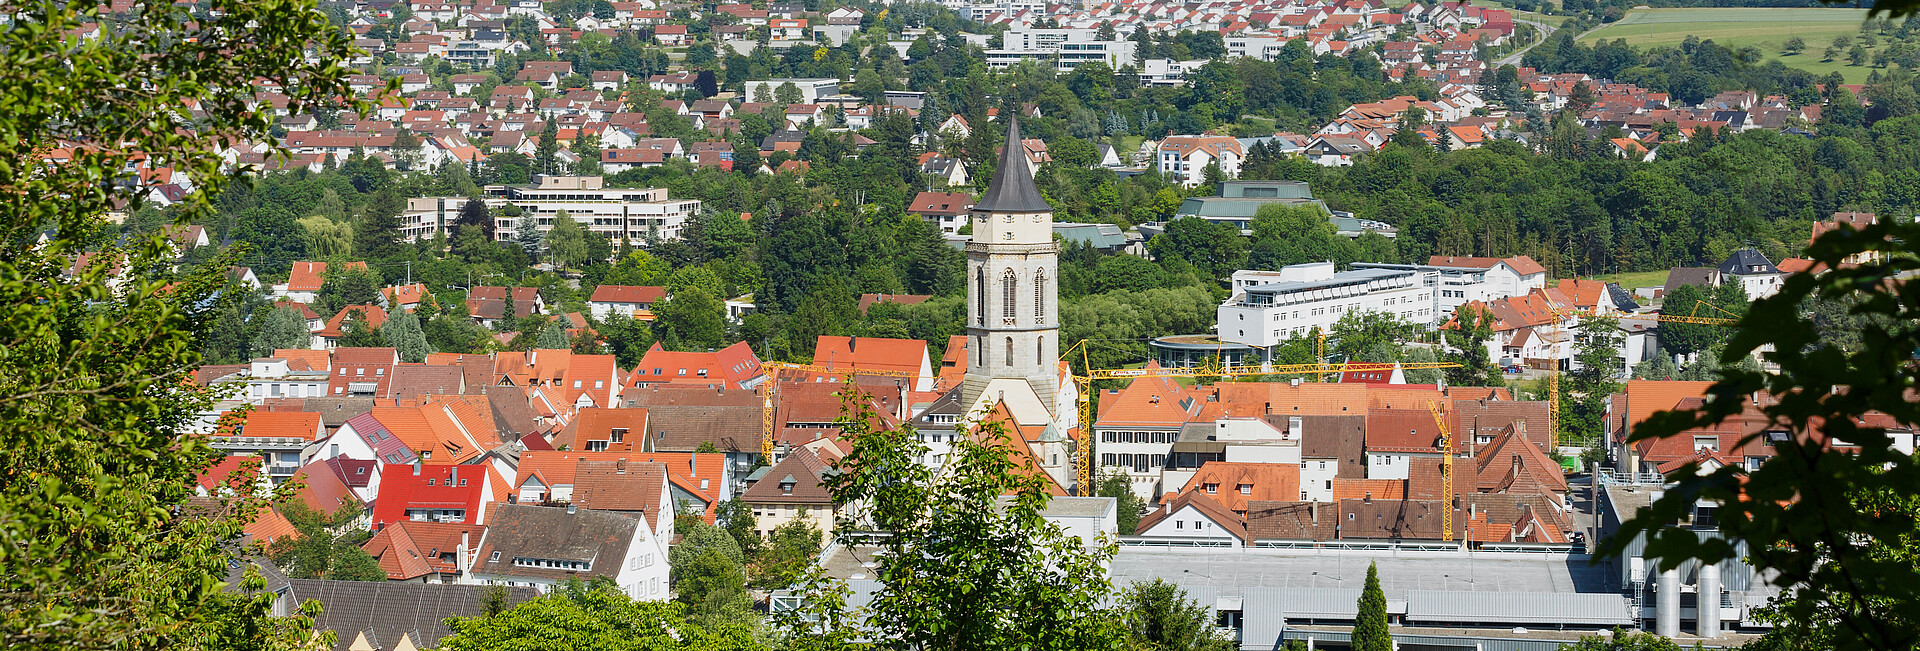 Kreisstadt Balingen im Zollernalbkreis auf der Schwäbischen Alb